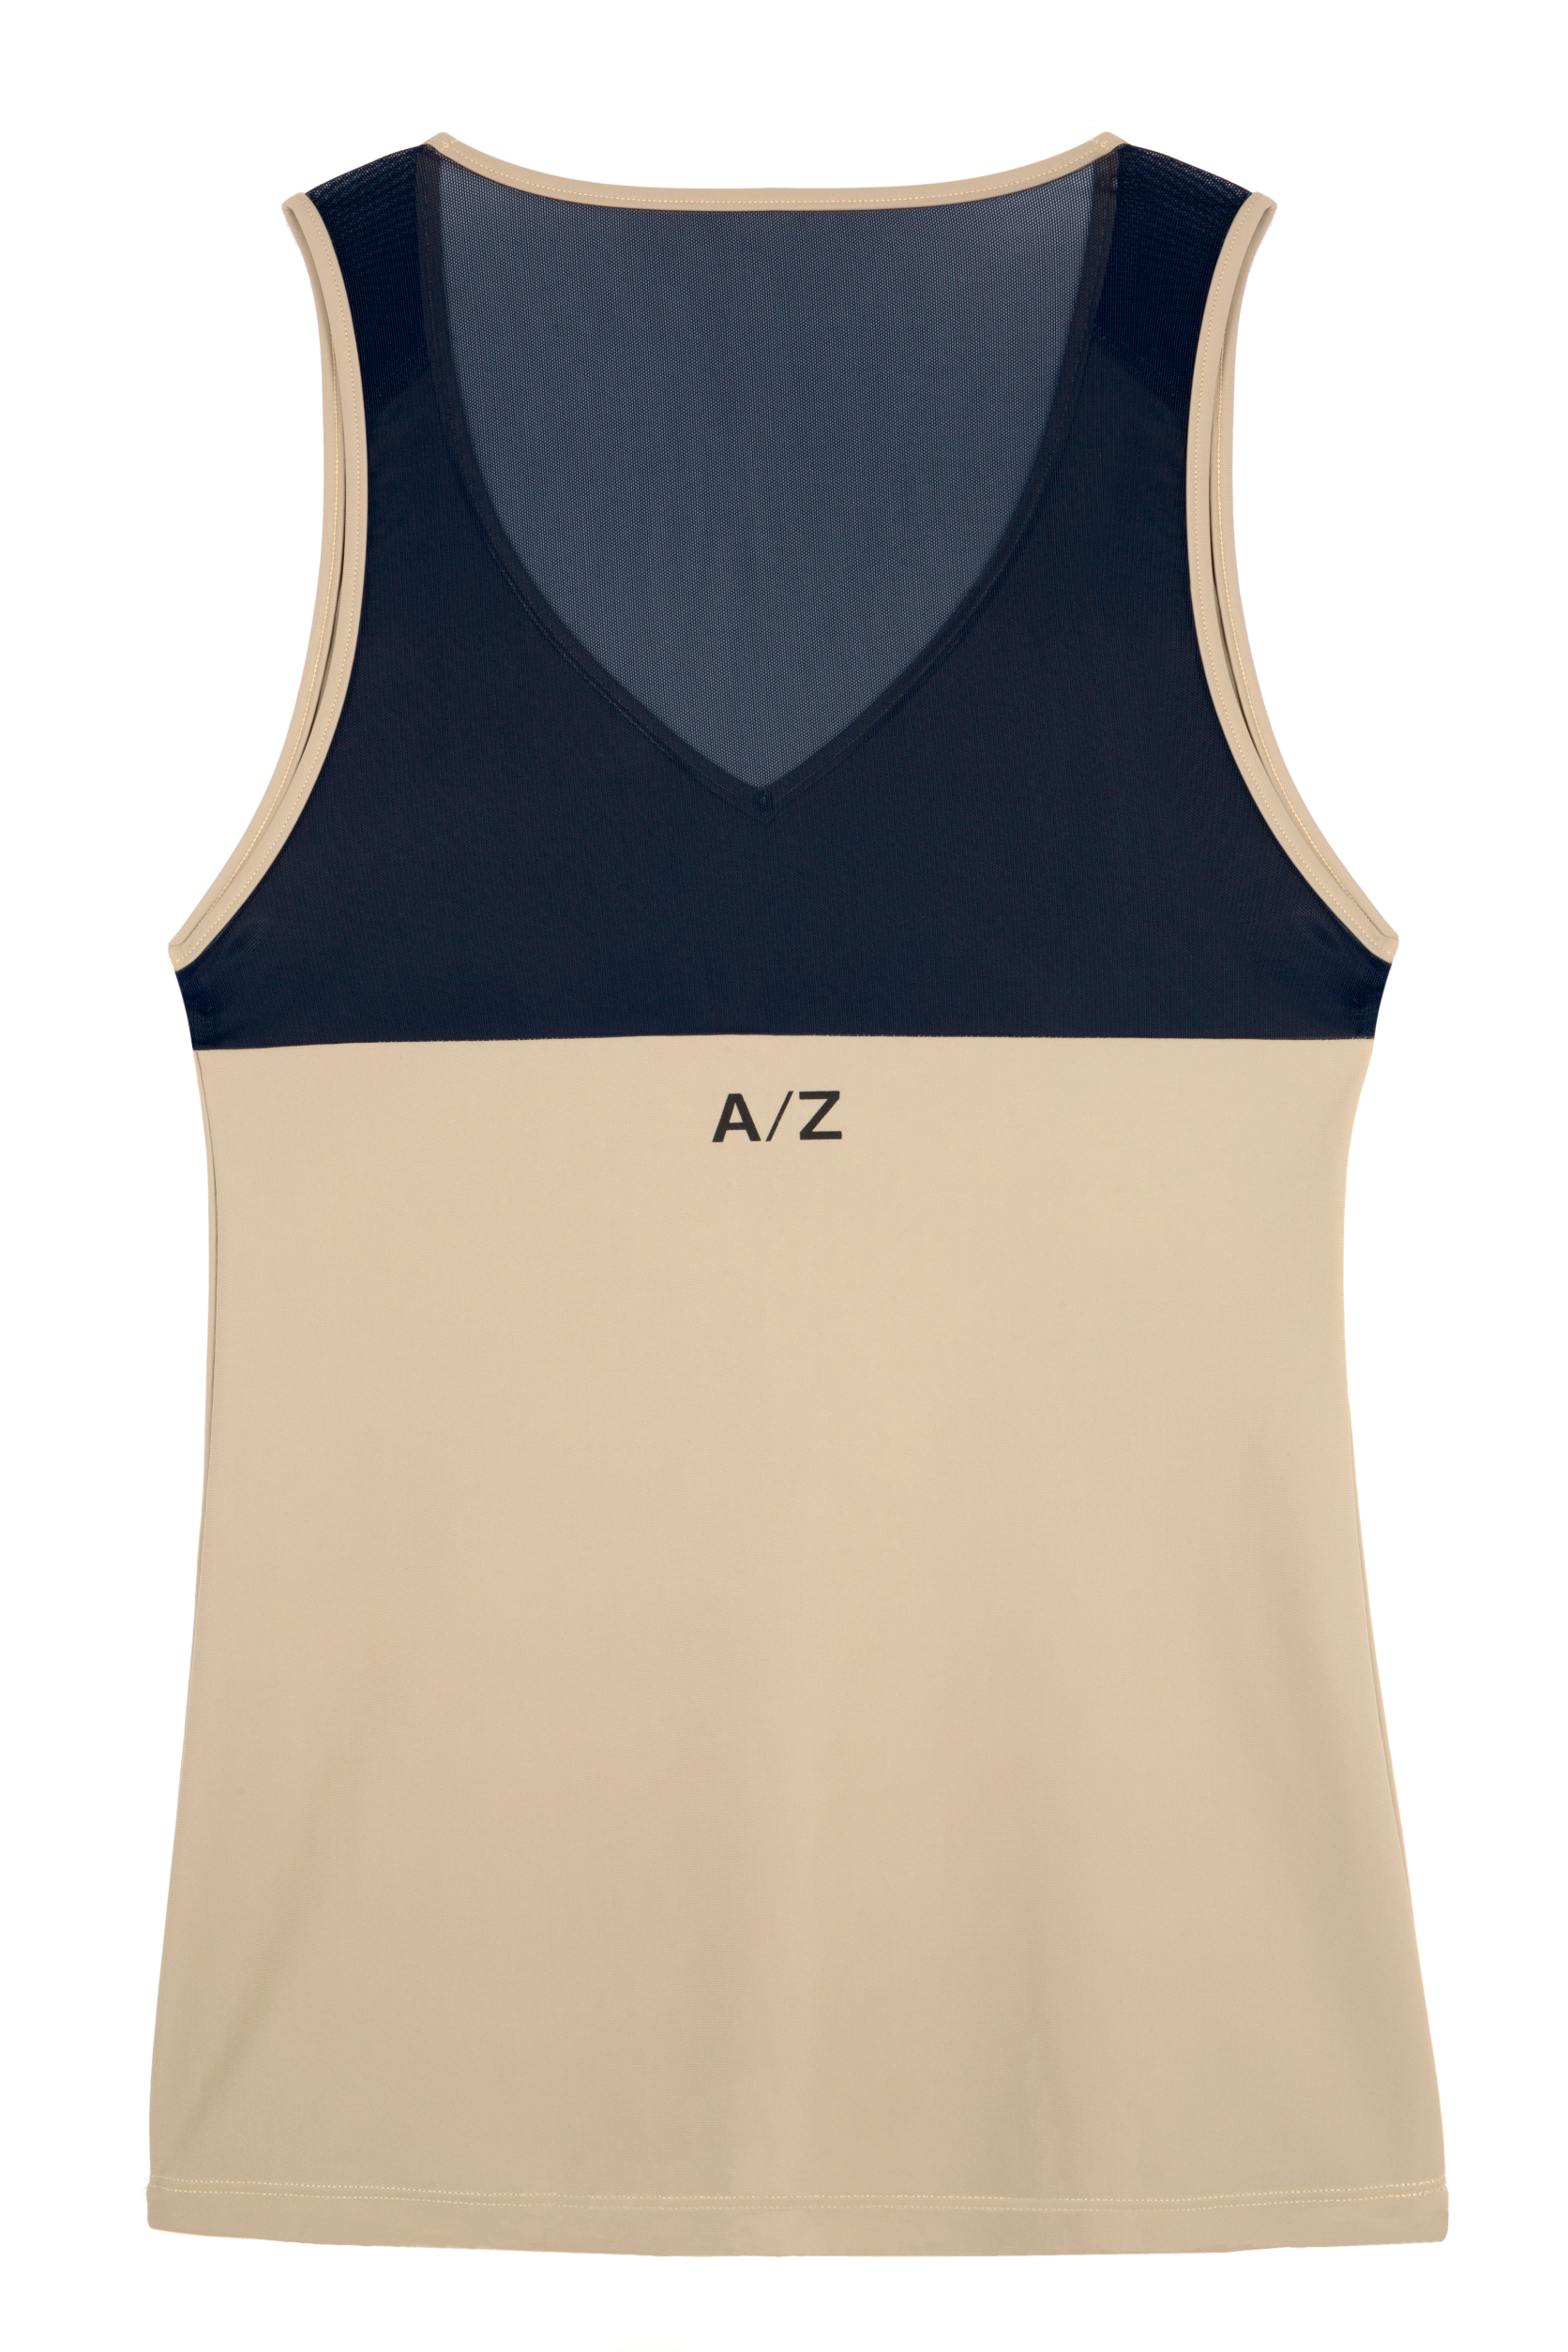 Débardeur beige et bleu marine avec le logo A/Z de la marque AZAR Gang